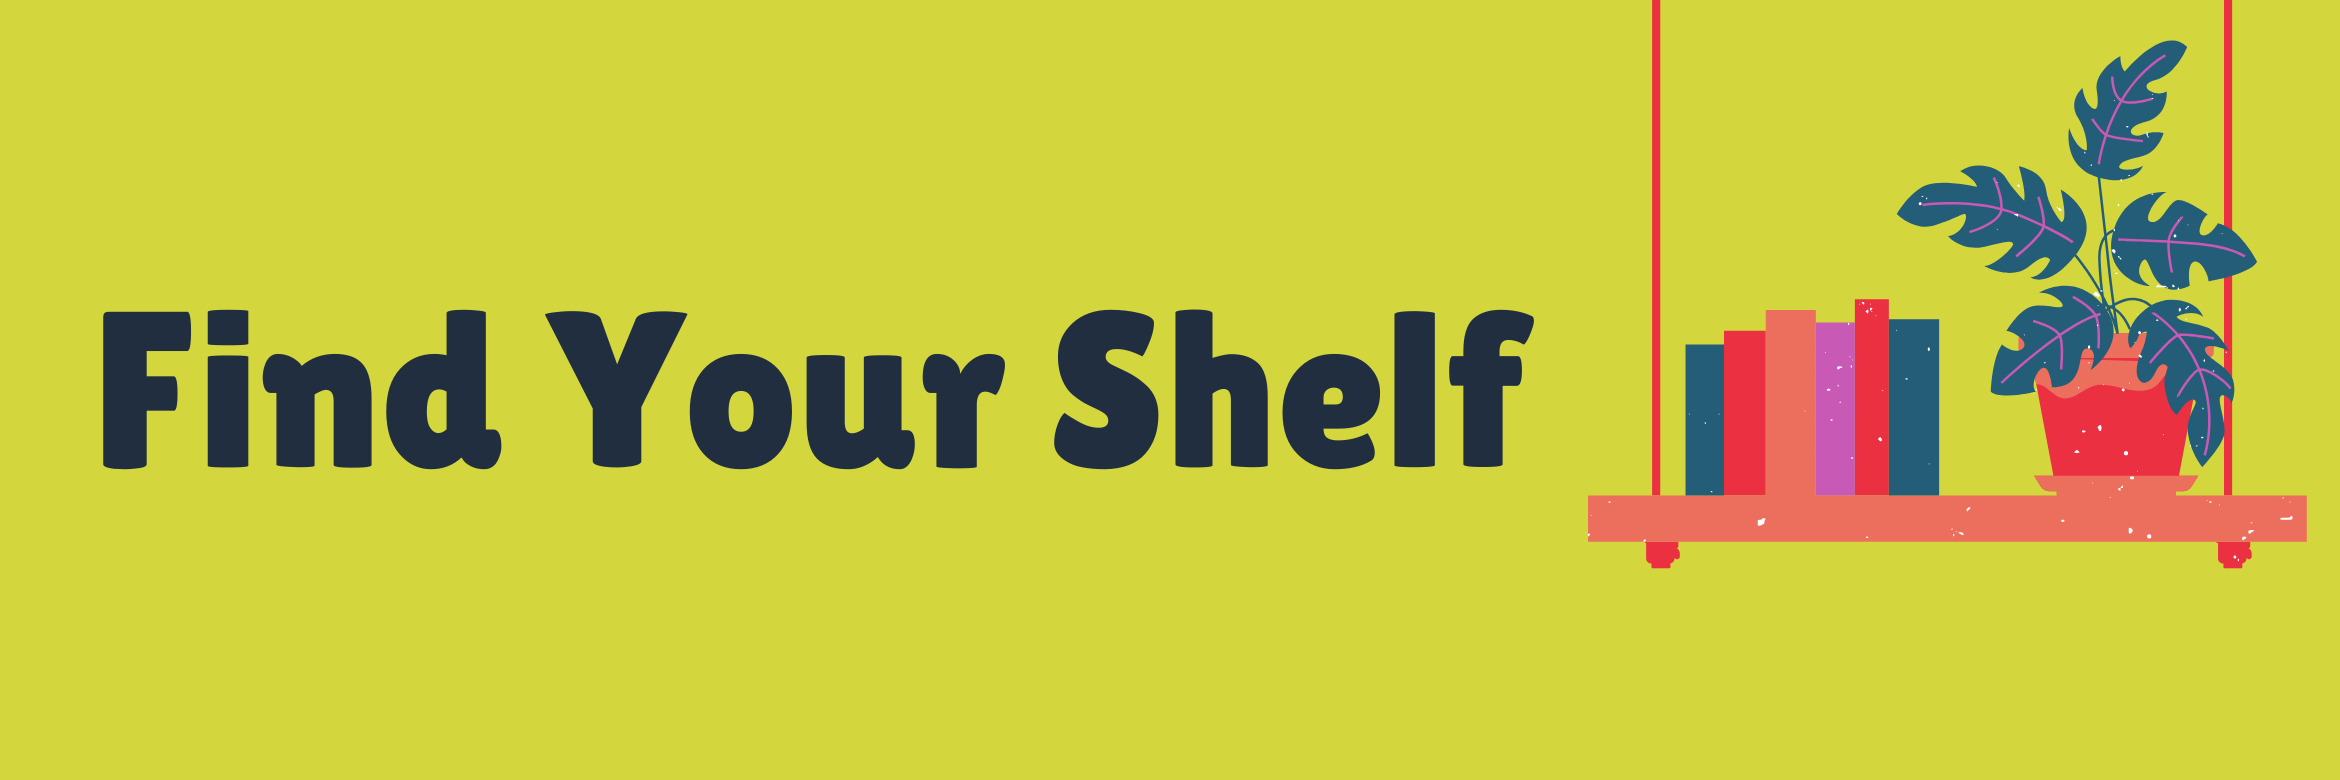 Find Your Shelf graphic header